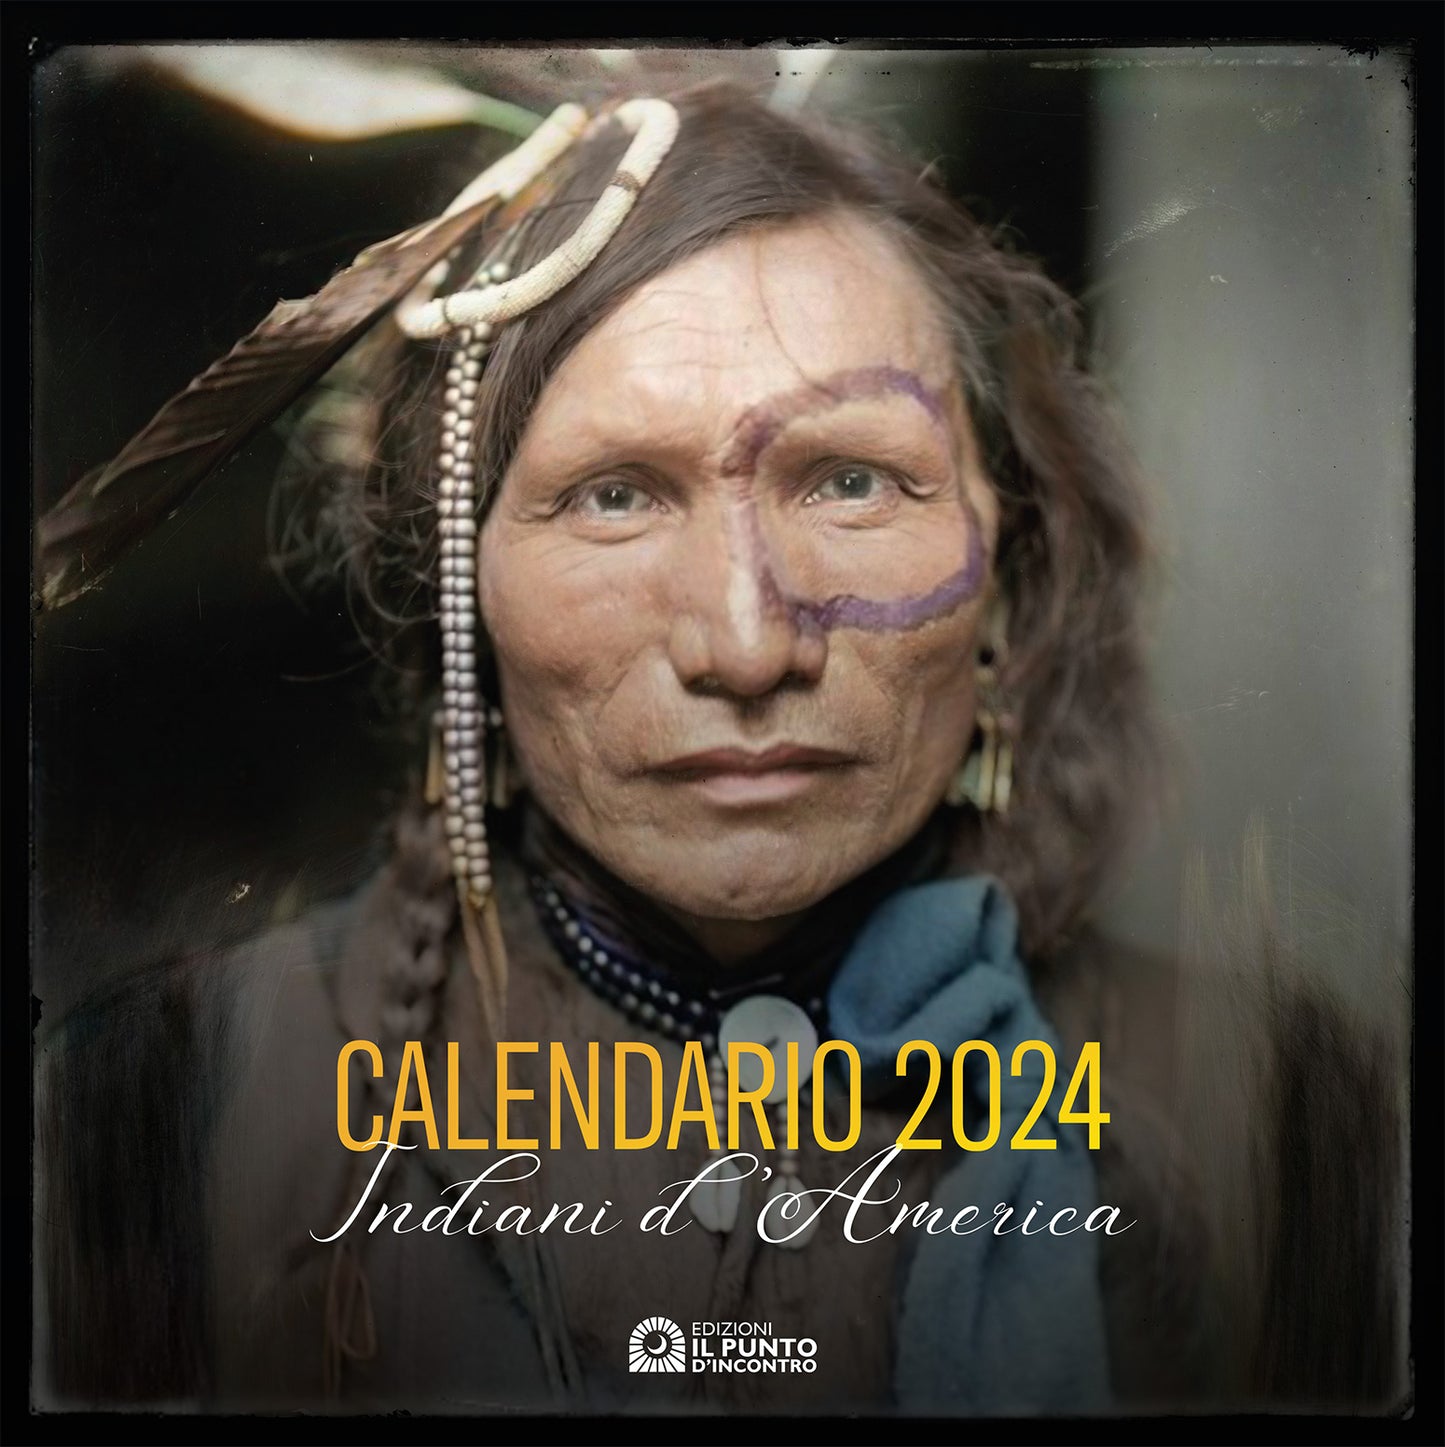 Calendario 2024 Indiani d’America